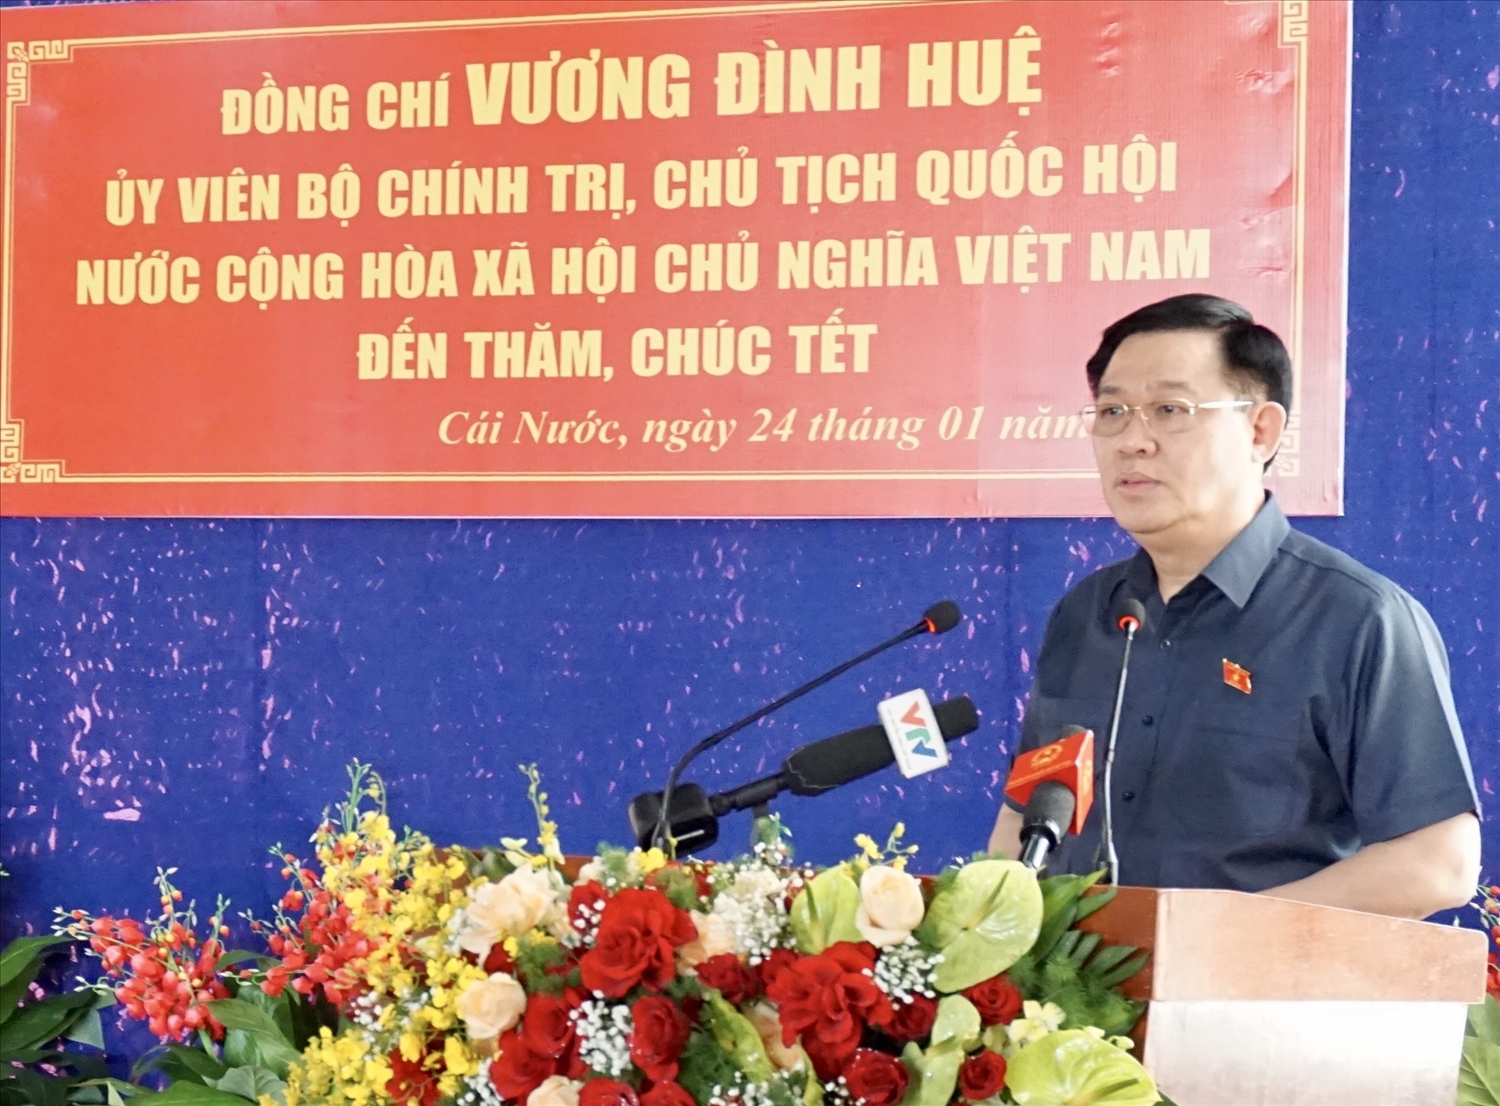 Chủ tịch Quốc hội Vương Đình Huệ phát biểu tại Tiểu đoàn U Minh 2 (huyện Cái Nước)